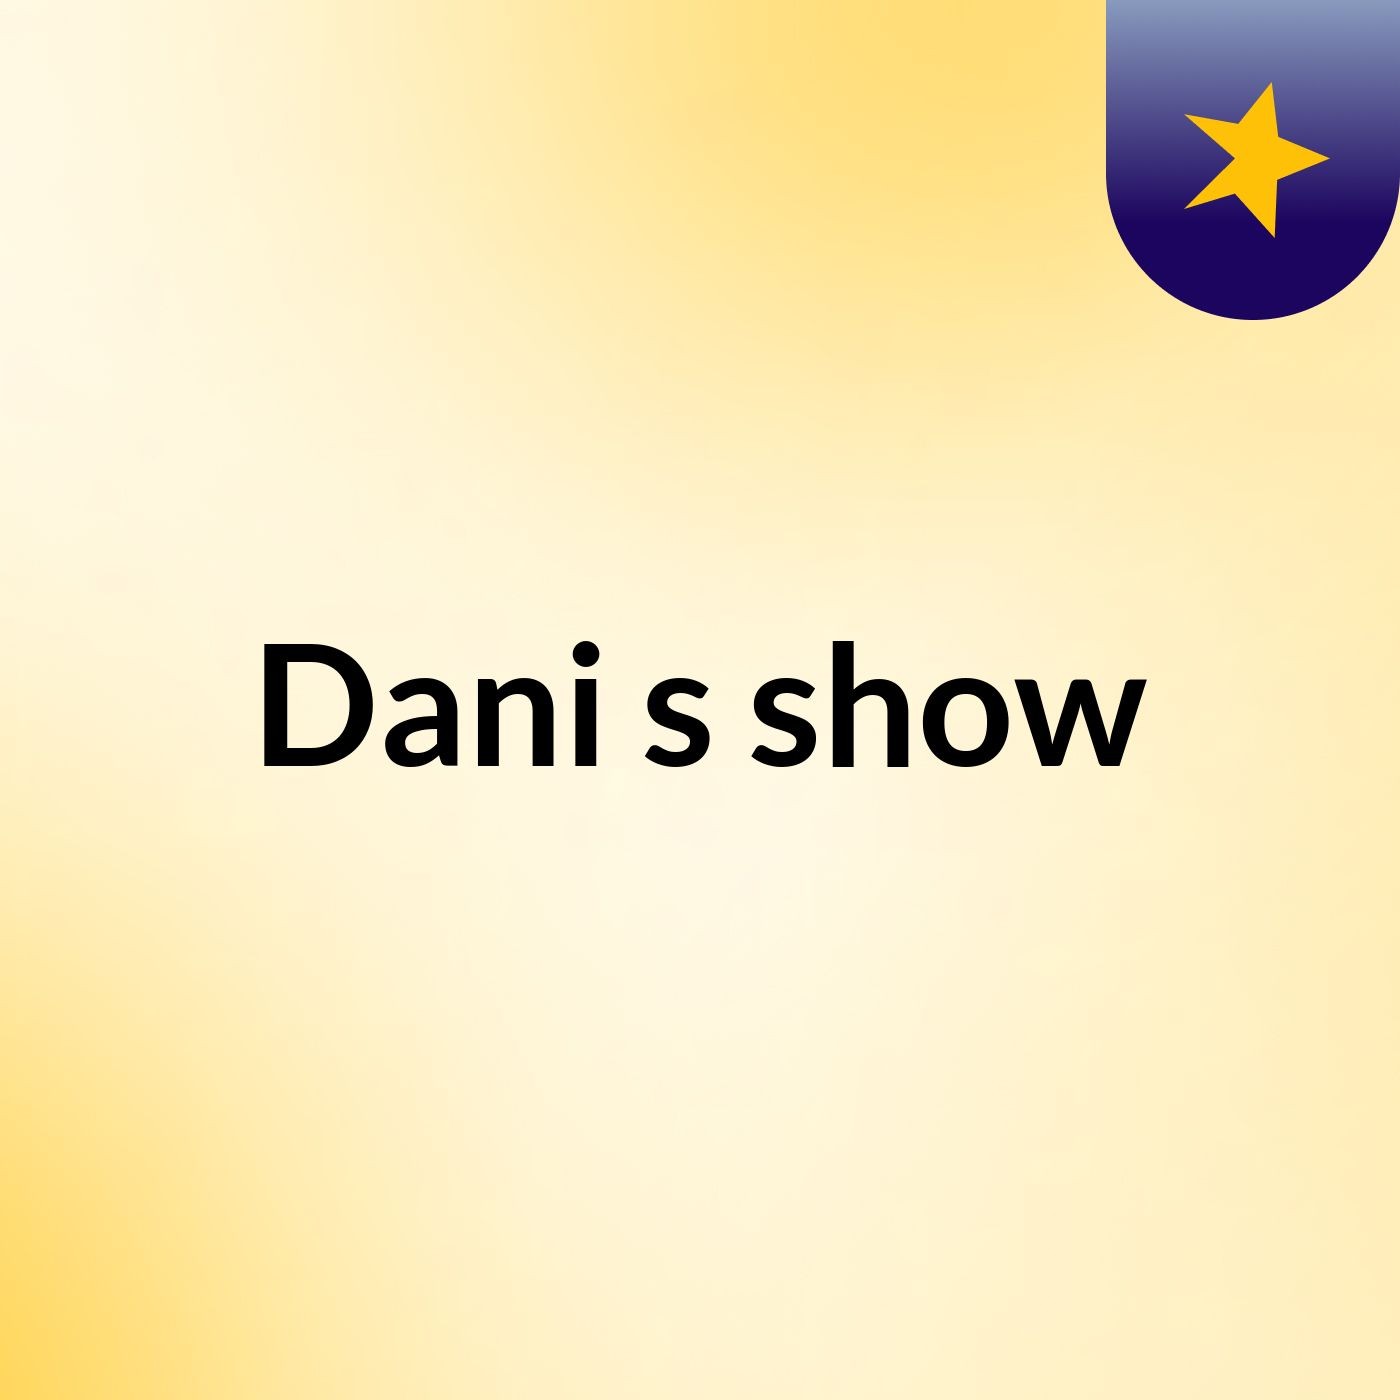 Dani's show